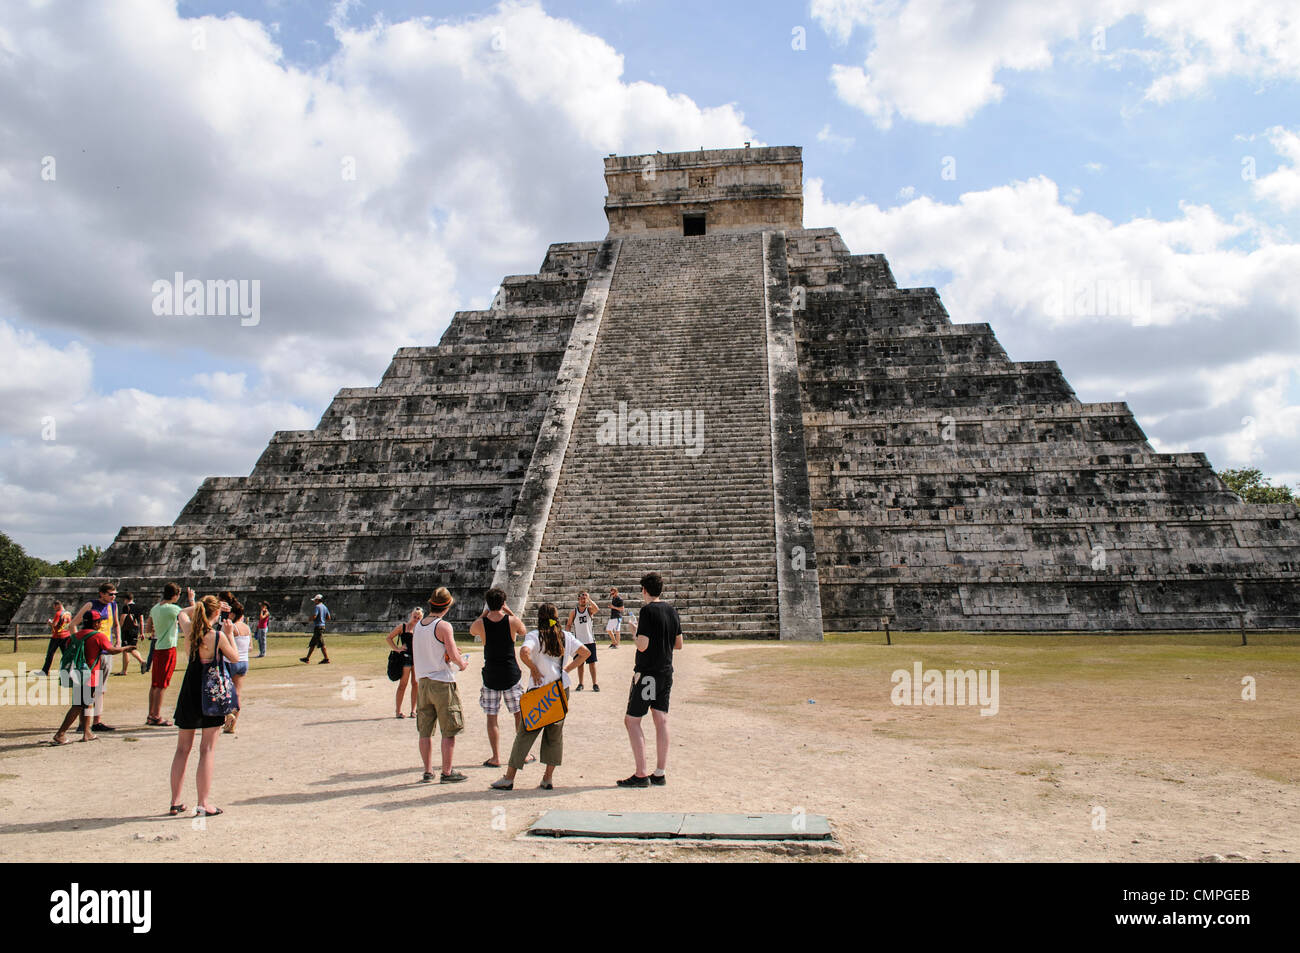 CHICHEN ITZA, Messico - un gruppo di turisti in visita al Tempio di Kukulkan (El Castillo) a Chichen Itza Zona archeologica e le rovine di una grande civiltà Maya città nel cuore della Penisola dello Yucatan del Messico. Foto Stock